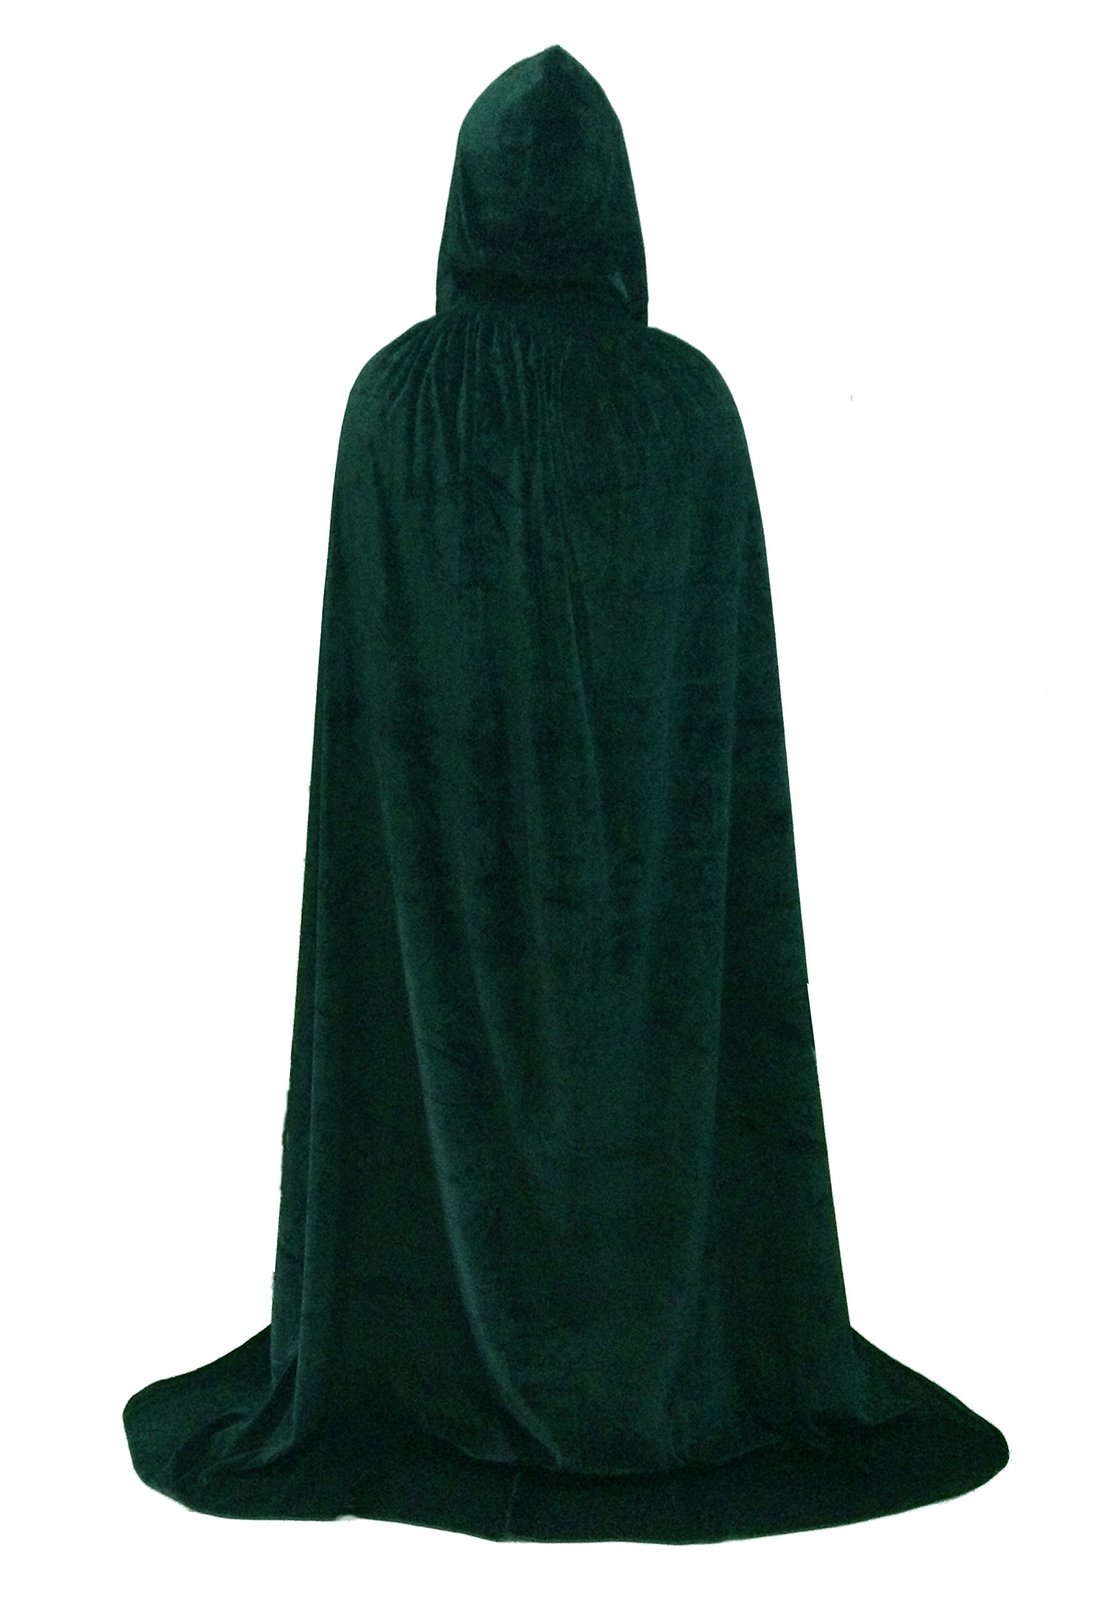 Hooded Cape Role Play Halloween Family Costume Velvet Cloak Dark green 150CM